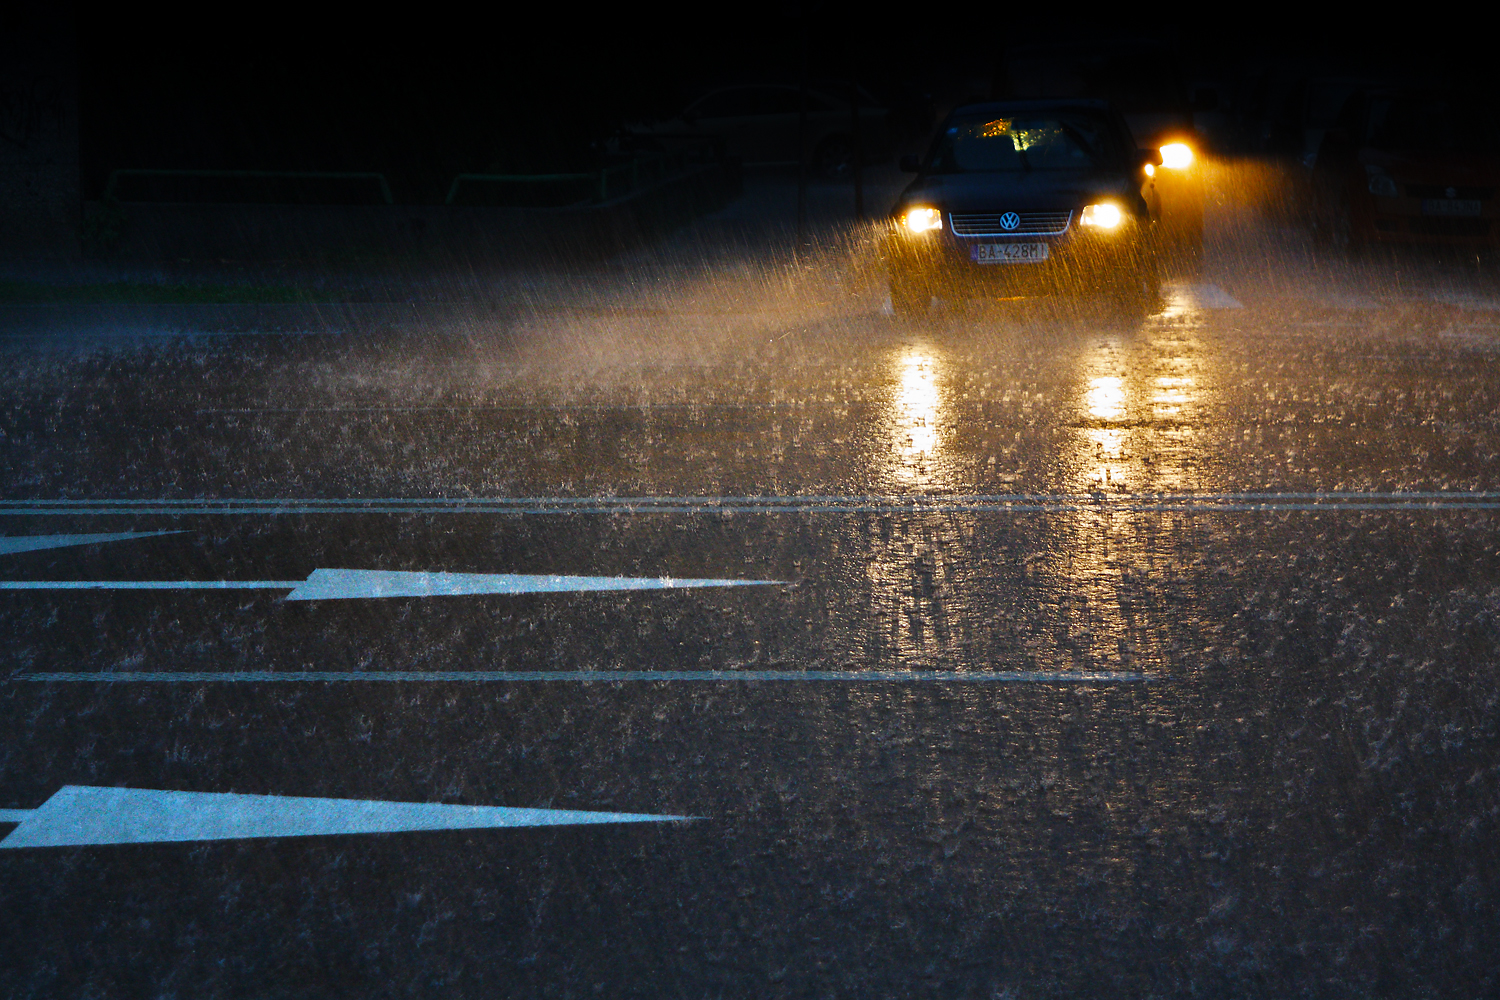 Daždivý podvečer na hlavnej ceste